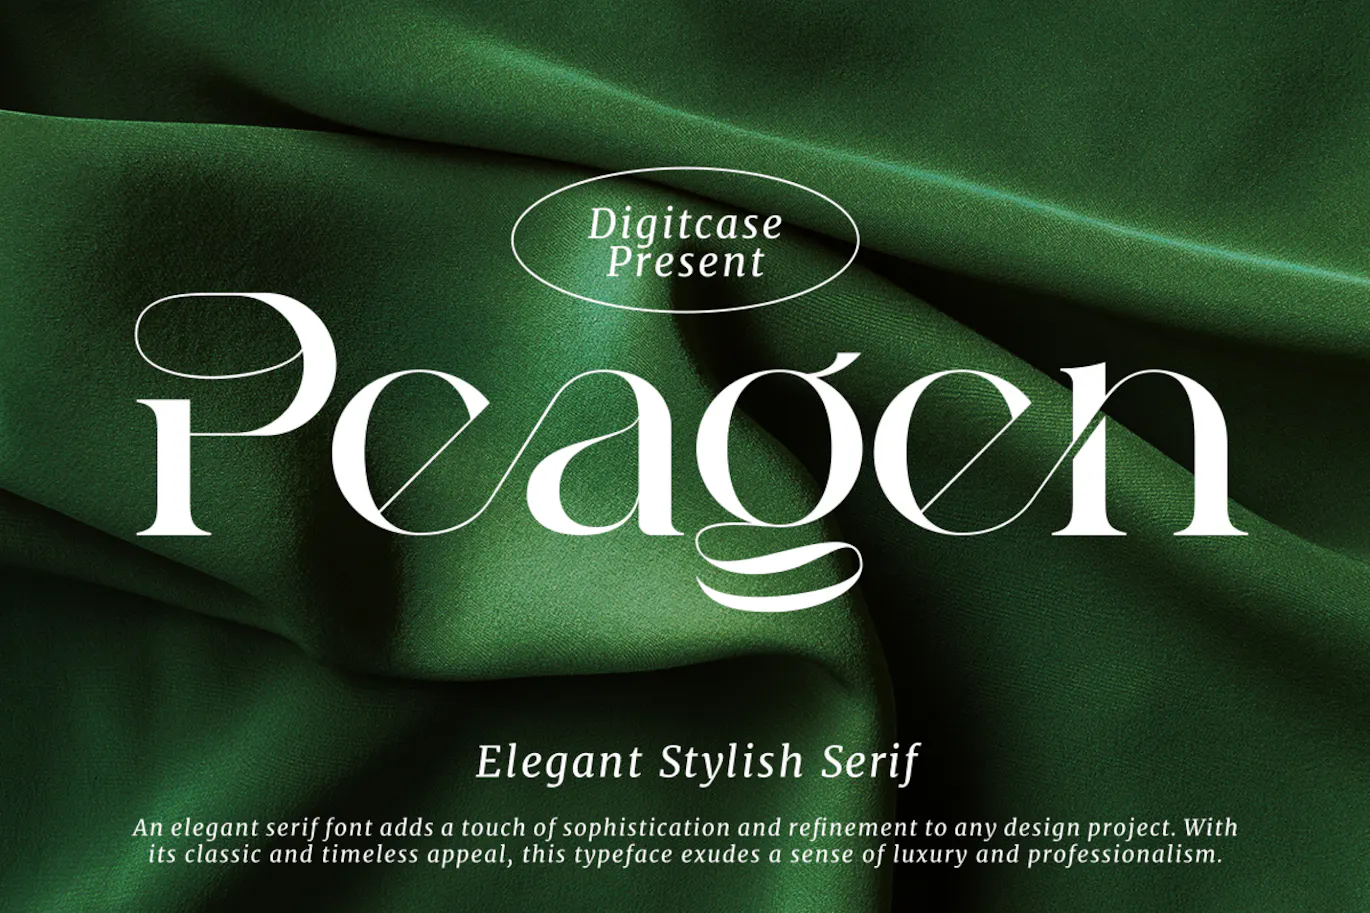 优雅时尚衬线字体 Peagen Elegant Stylish Serif